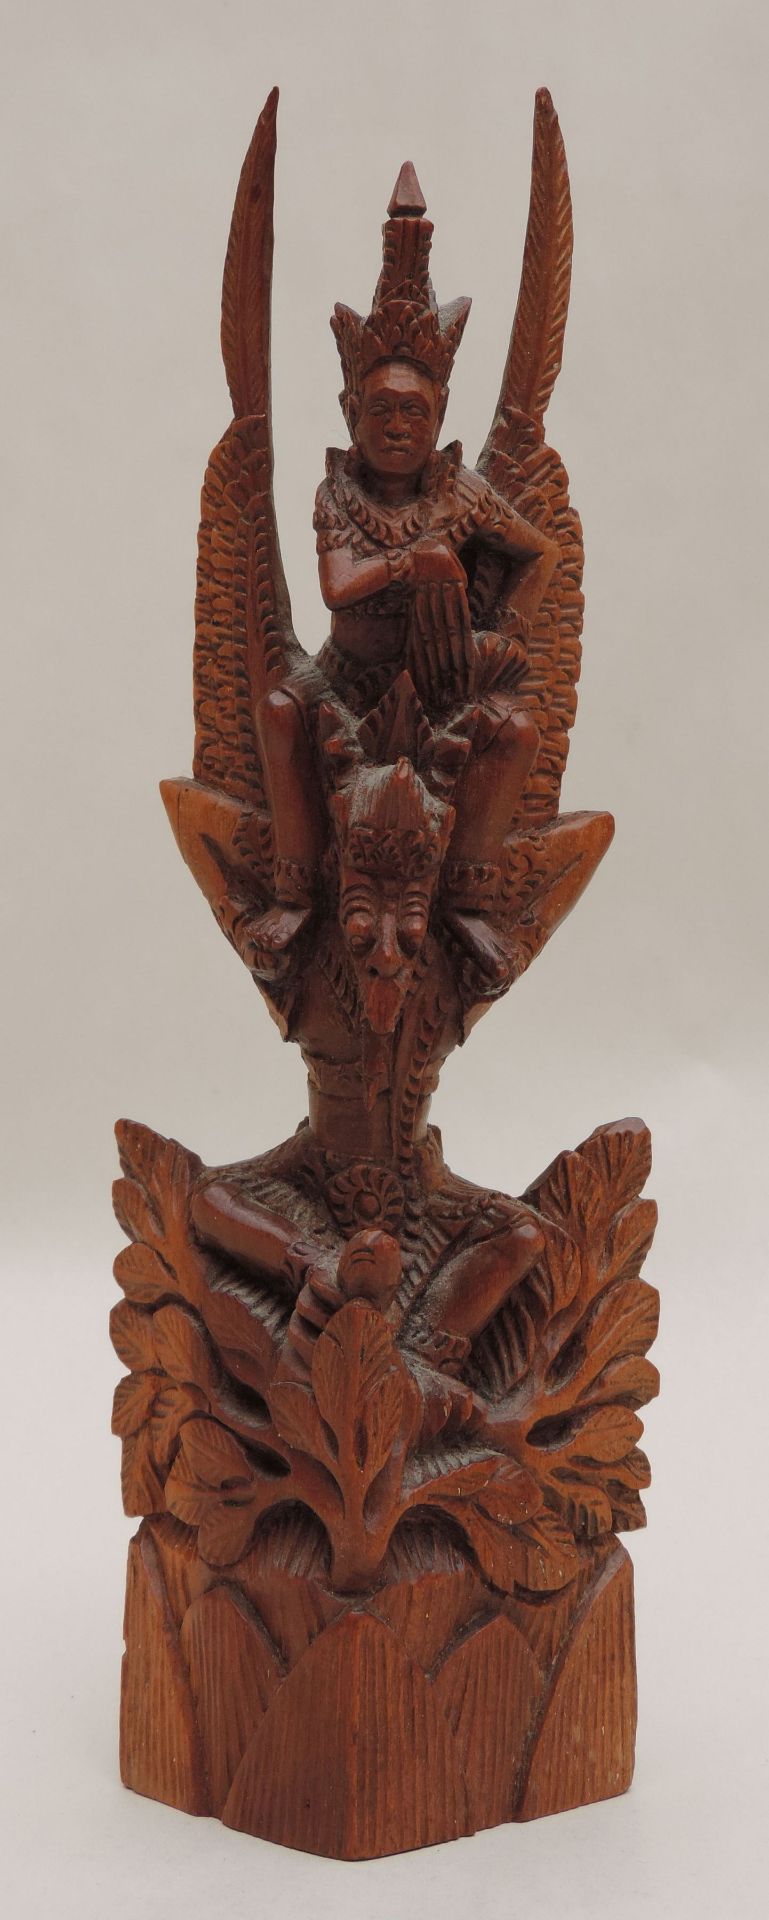 GRUPPE, Bali, Teak, Turm von mythologischen Gestalten, teils hinduistischer Prägung auf Strauch